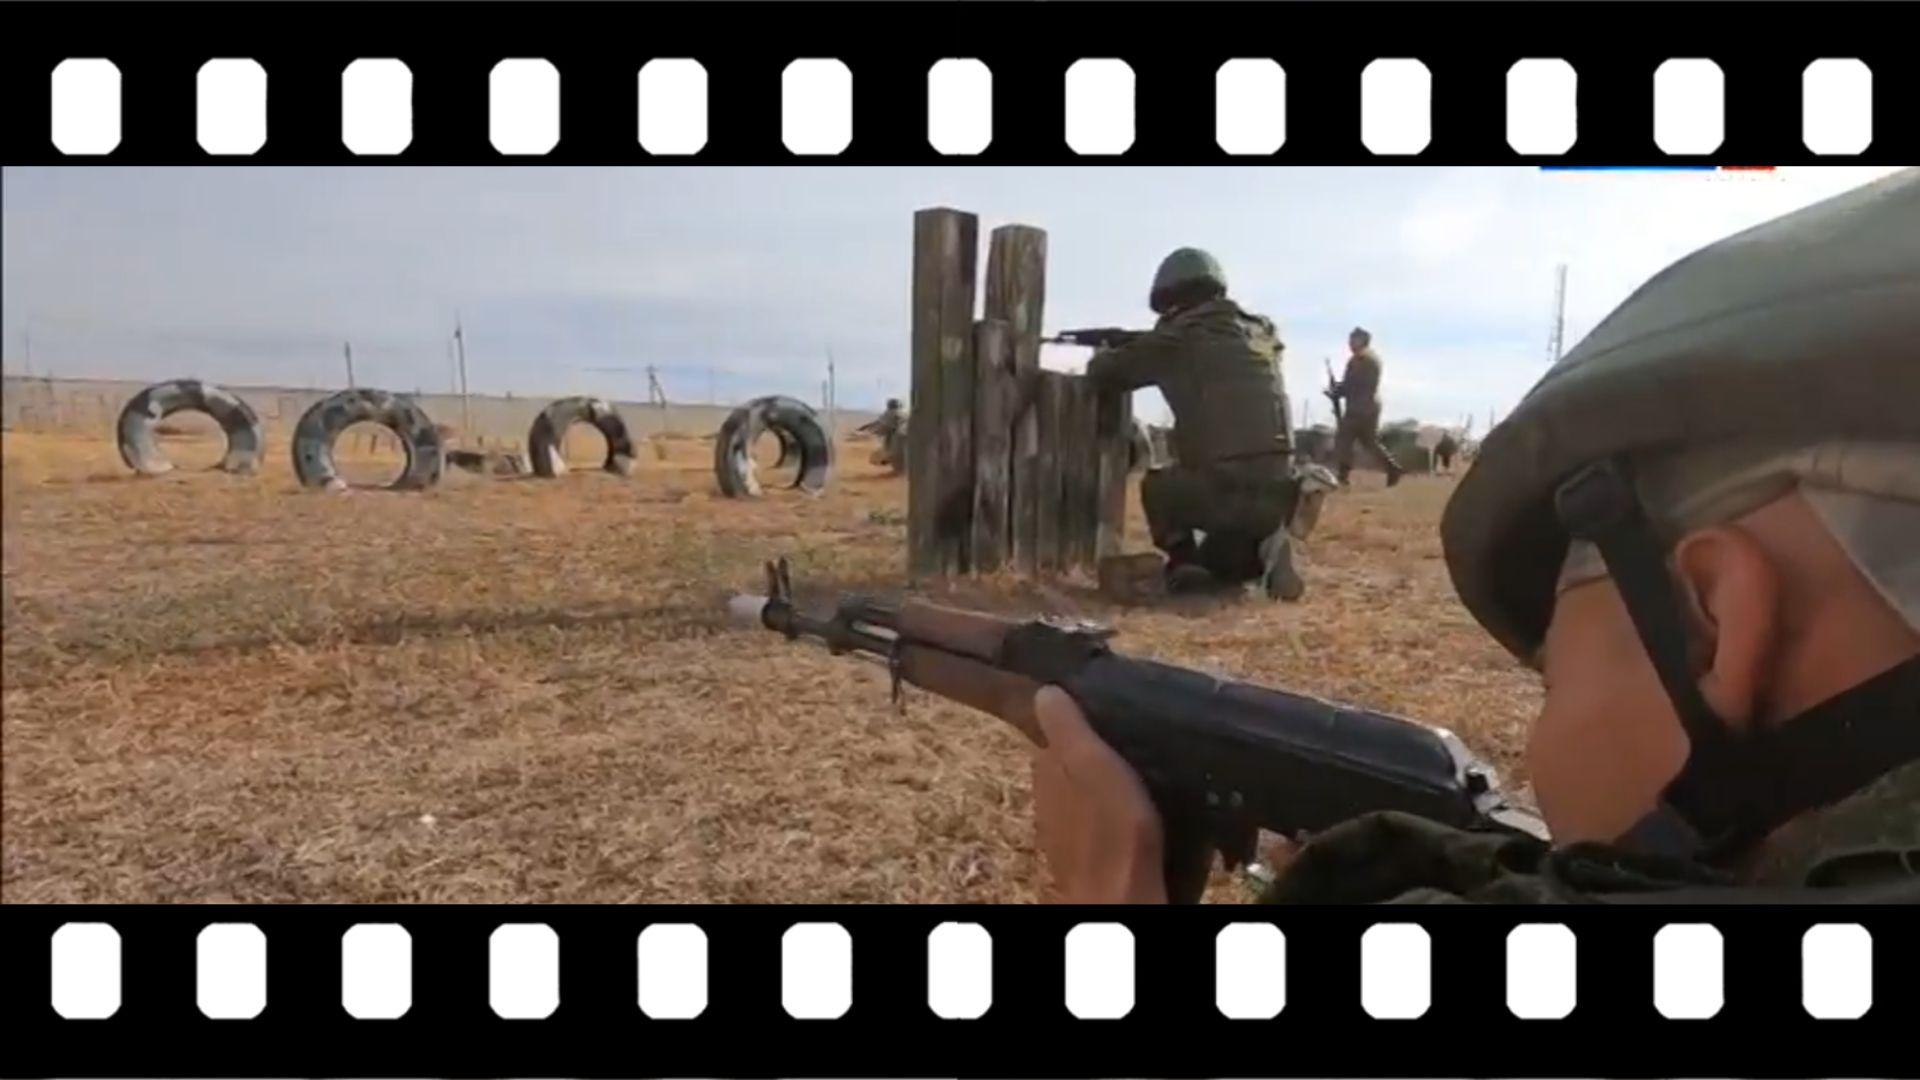 Grafika: klatka filmowa ze zdjęciem żołnierzy na poligonie